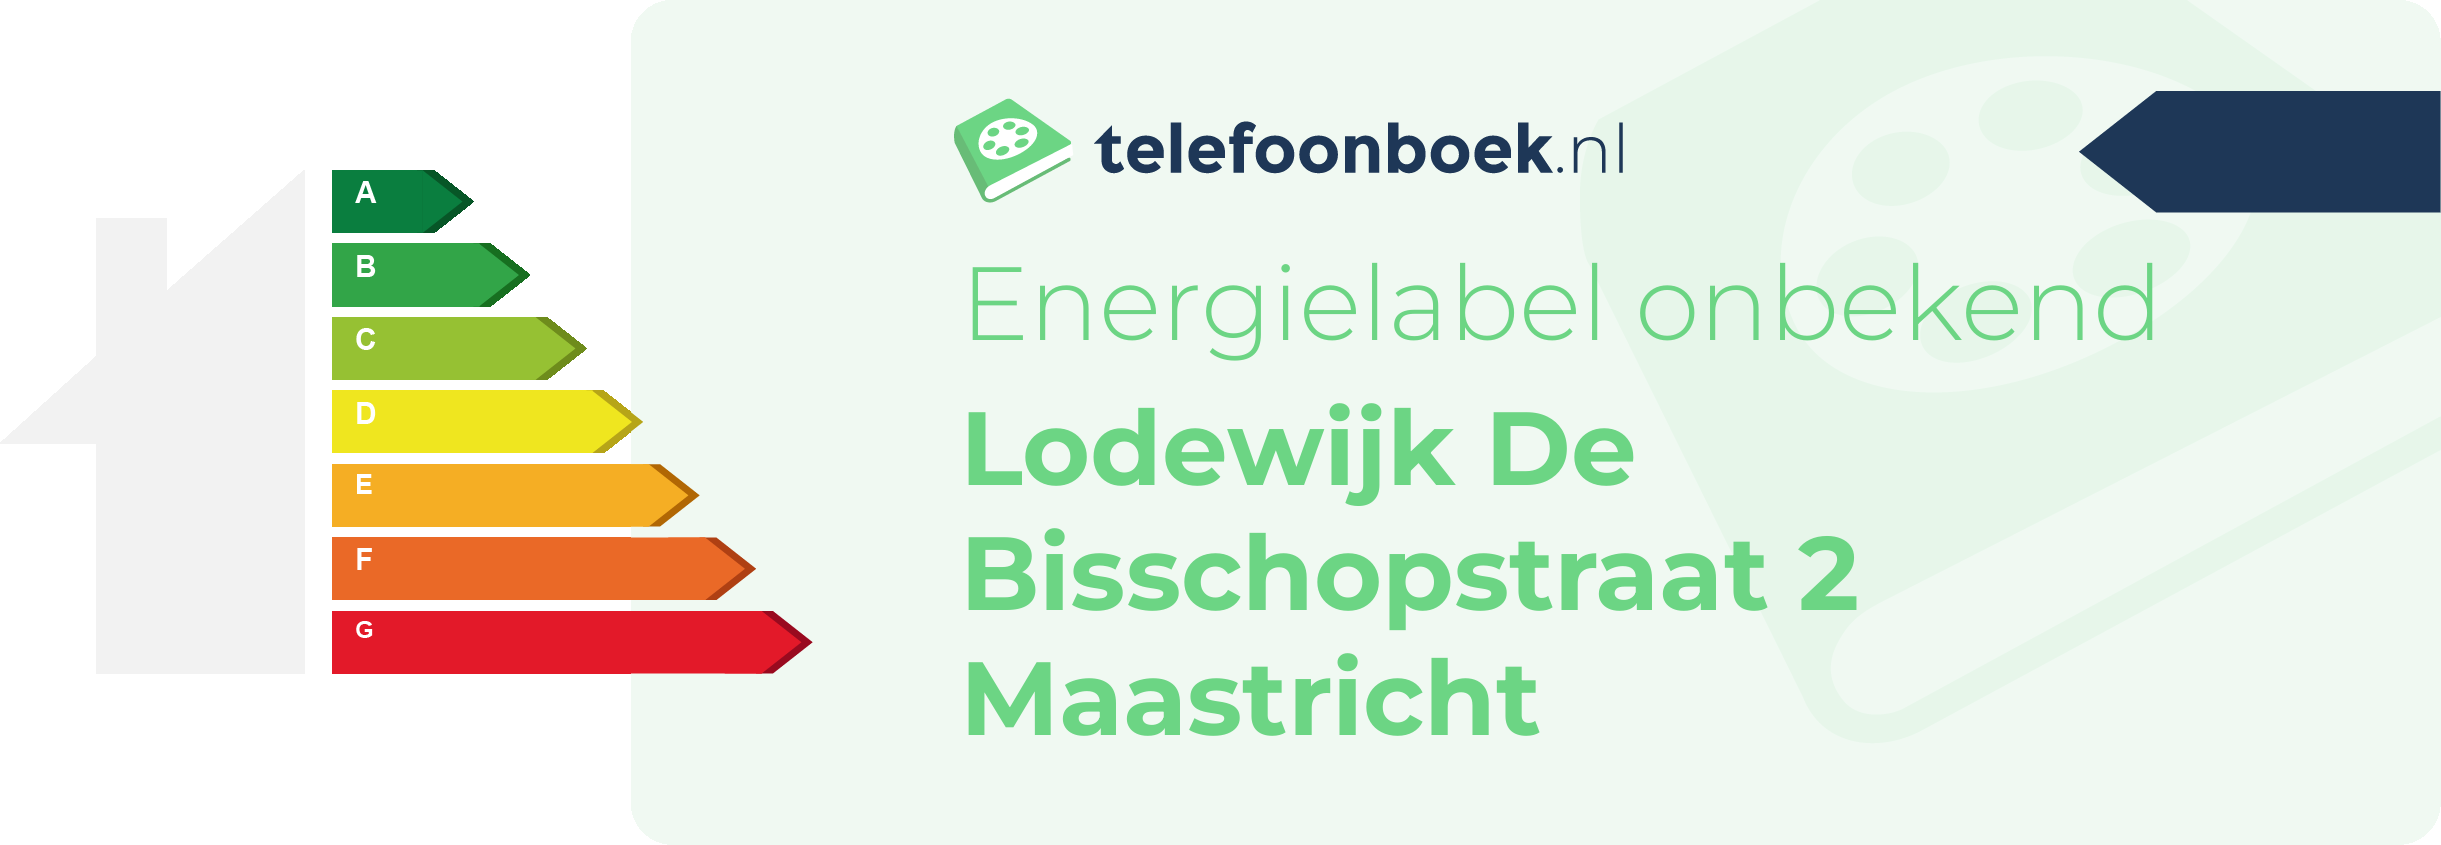 Energielabel Lodewijk De Bisschopstraat 2 Maastricht